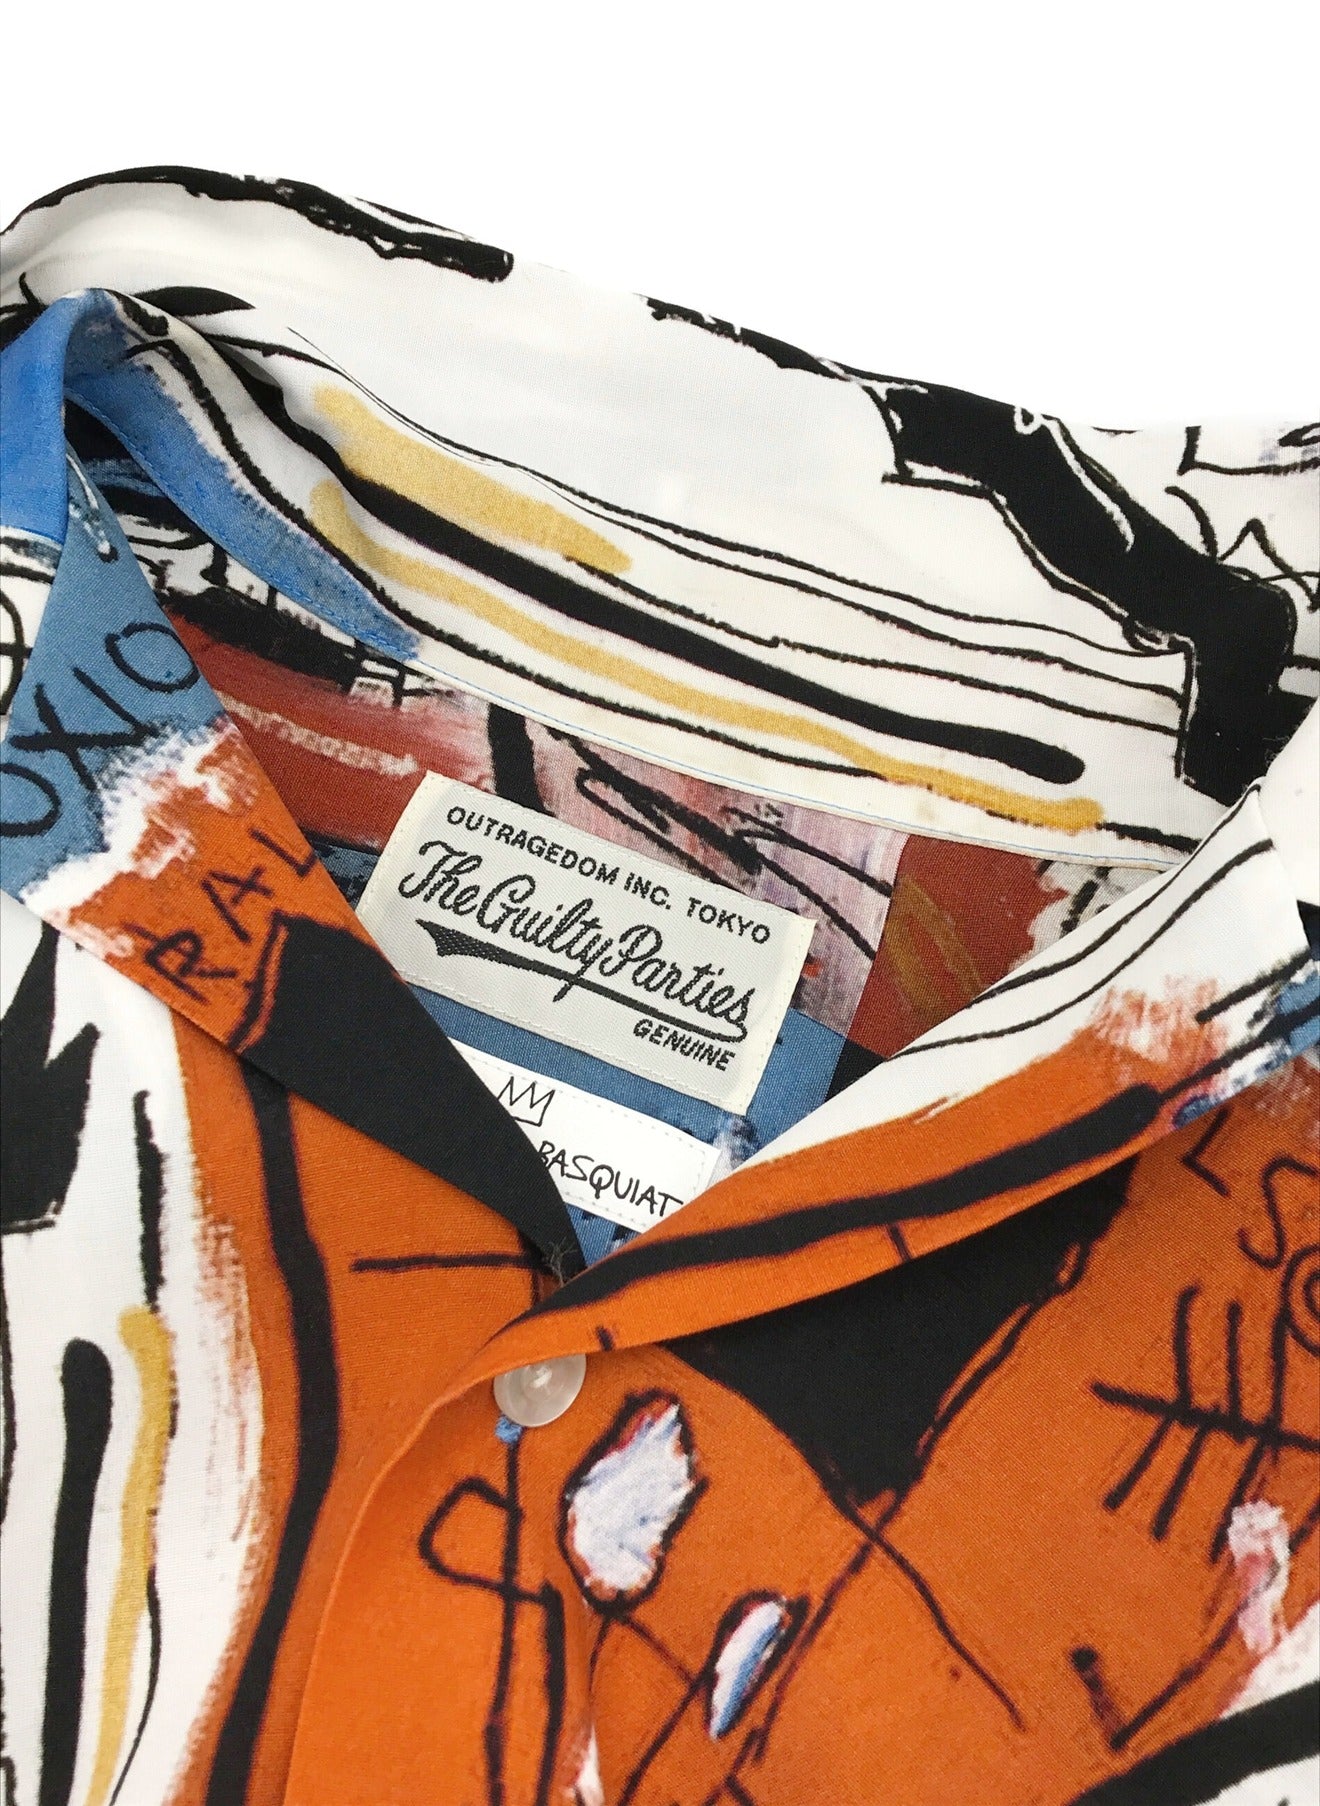 Wacko Maria Jean-Michel Basquiat /夏威夷衬衫（3型）（Jean-Michel Basquiat夏威夷衬衫Type-3）